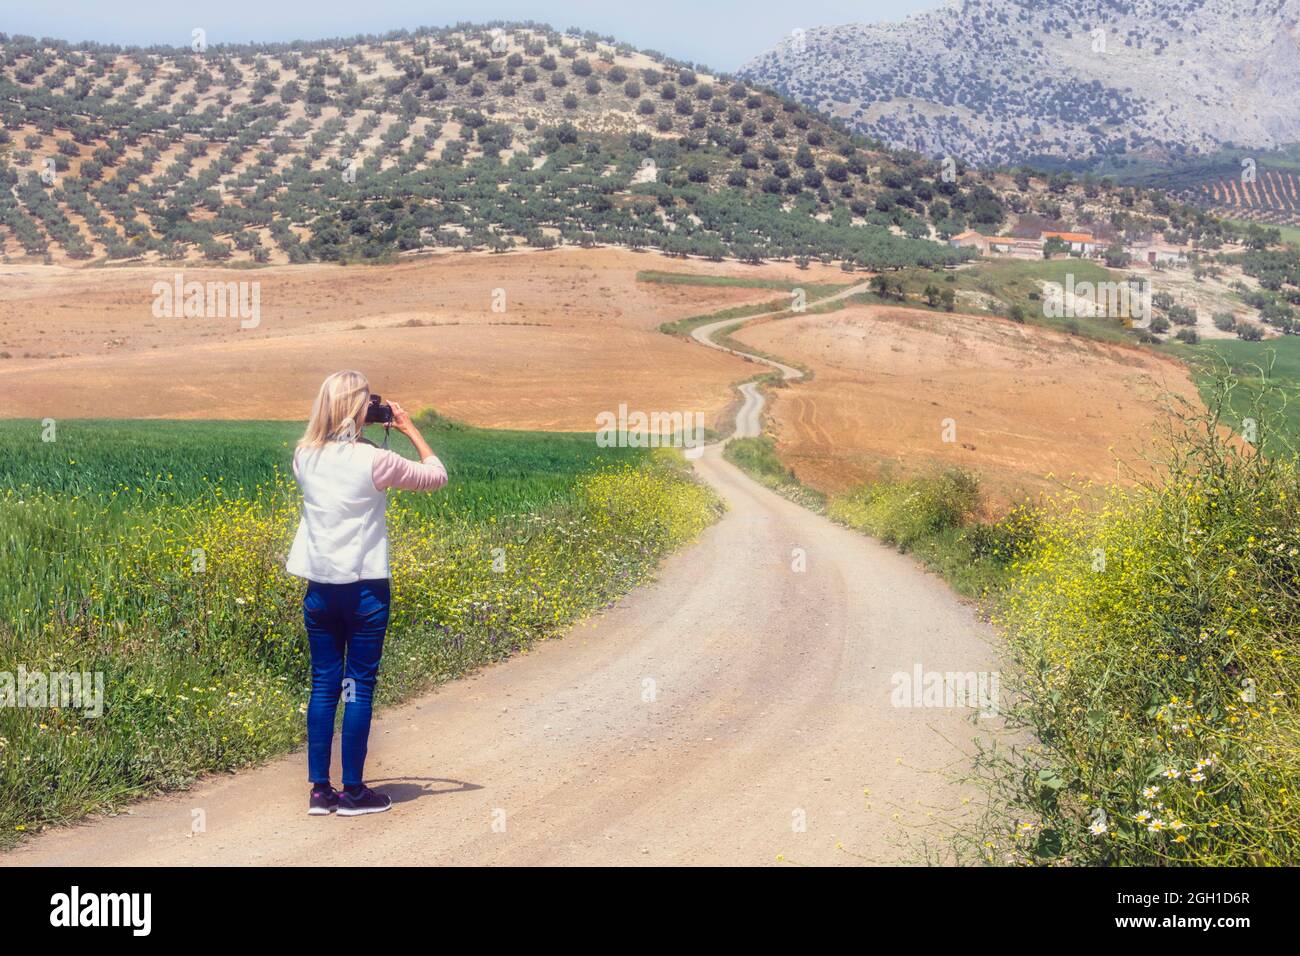 Femme photographiant le paysage avec une piste de campagne sinueuse près de Casabermeja, province de Malaga, Andalousie, sud de l'Espagne. Banque D'Images